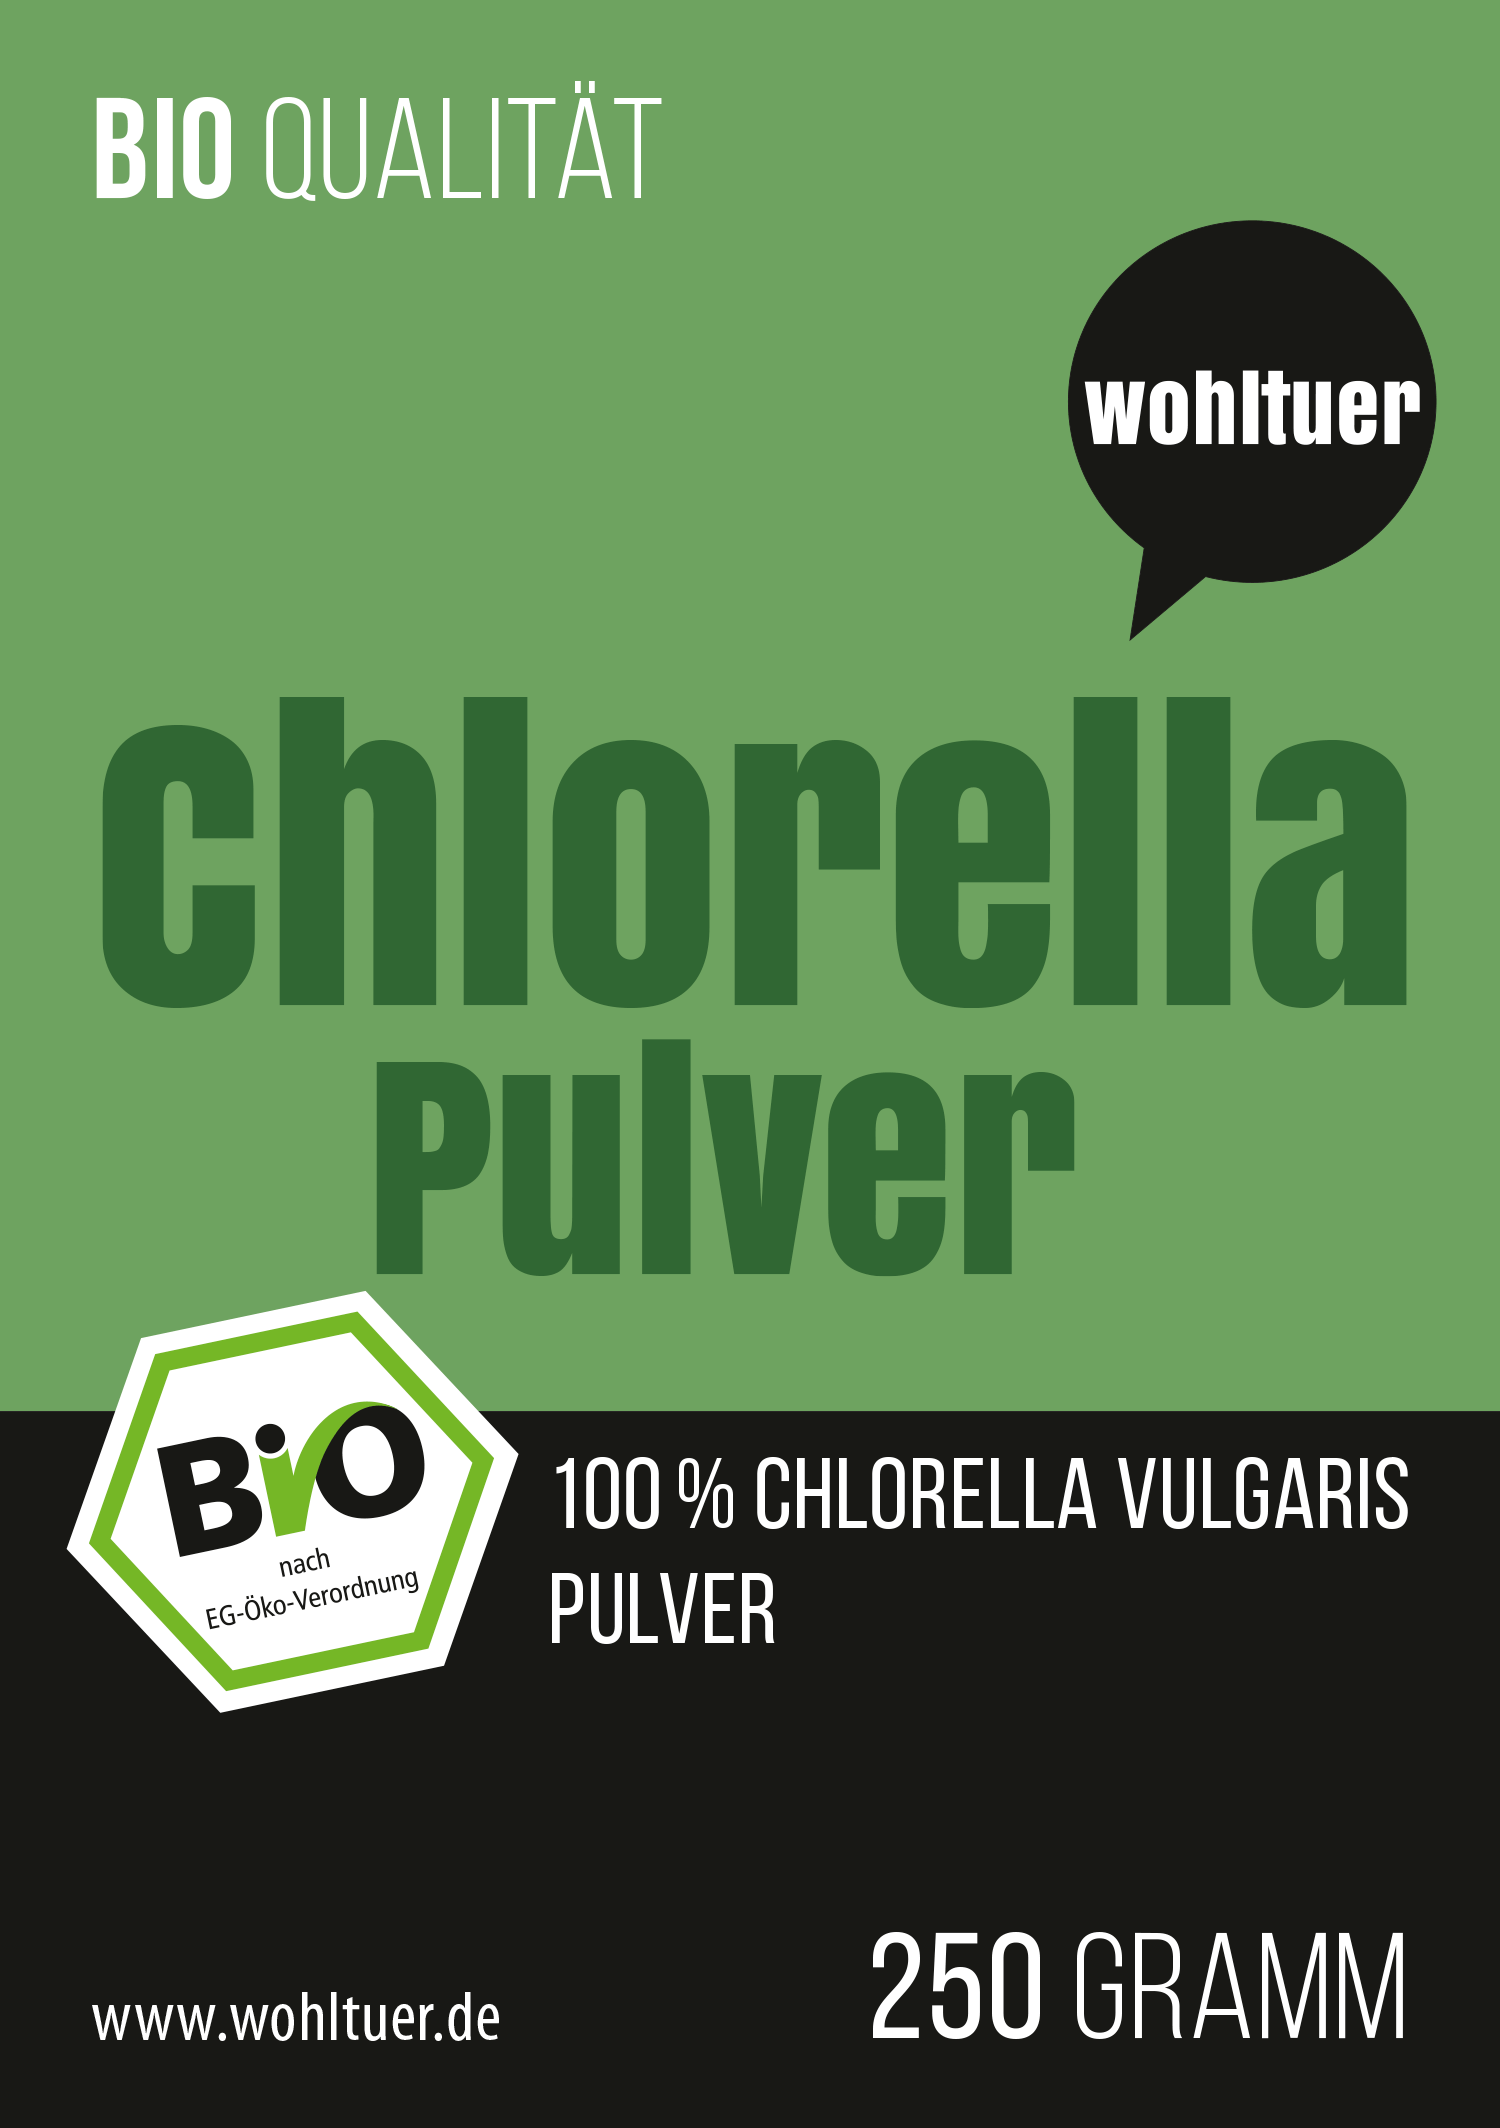 Bio Chlorella Pulver 250g